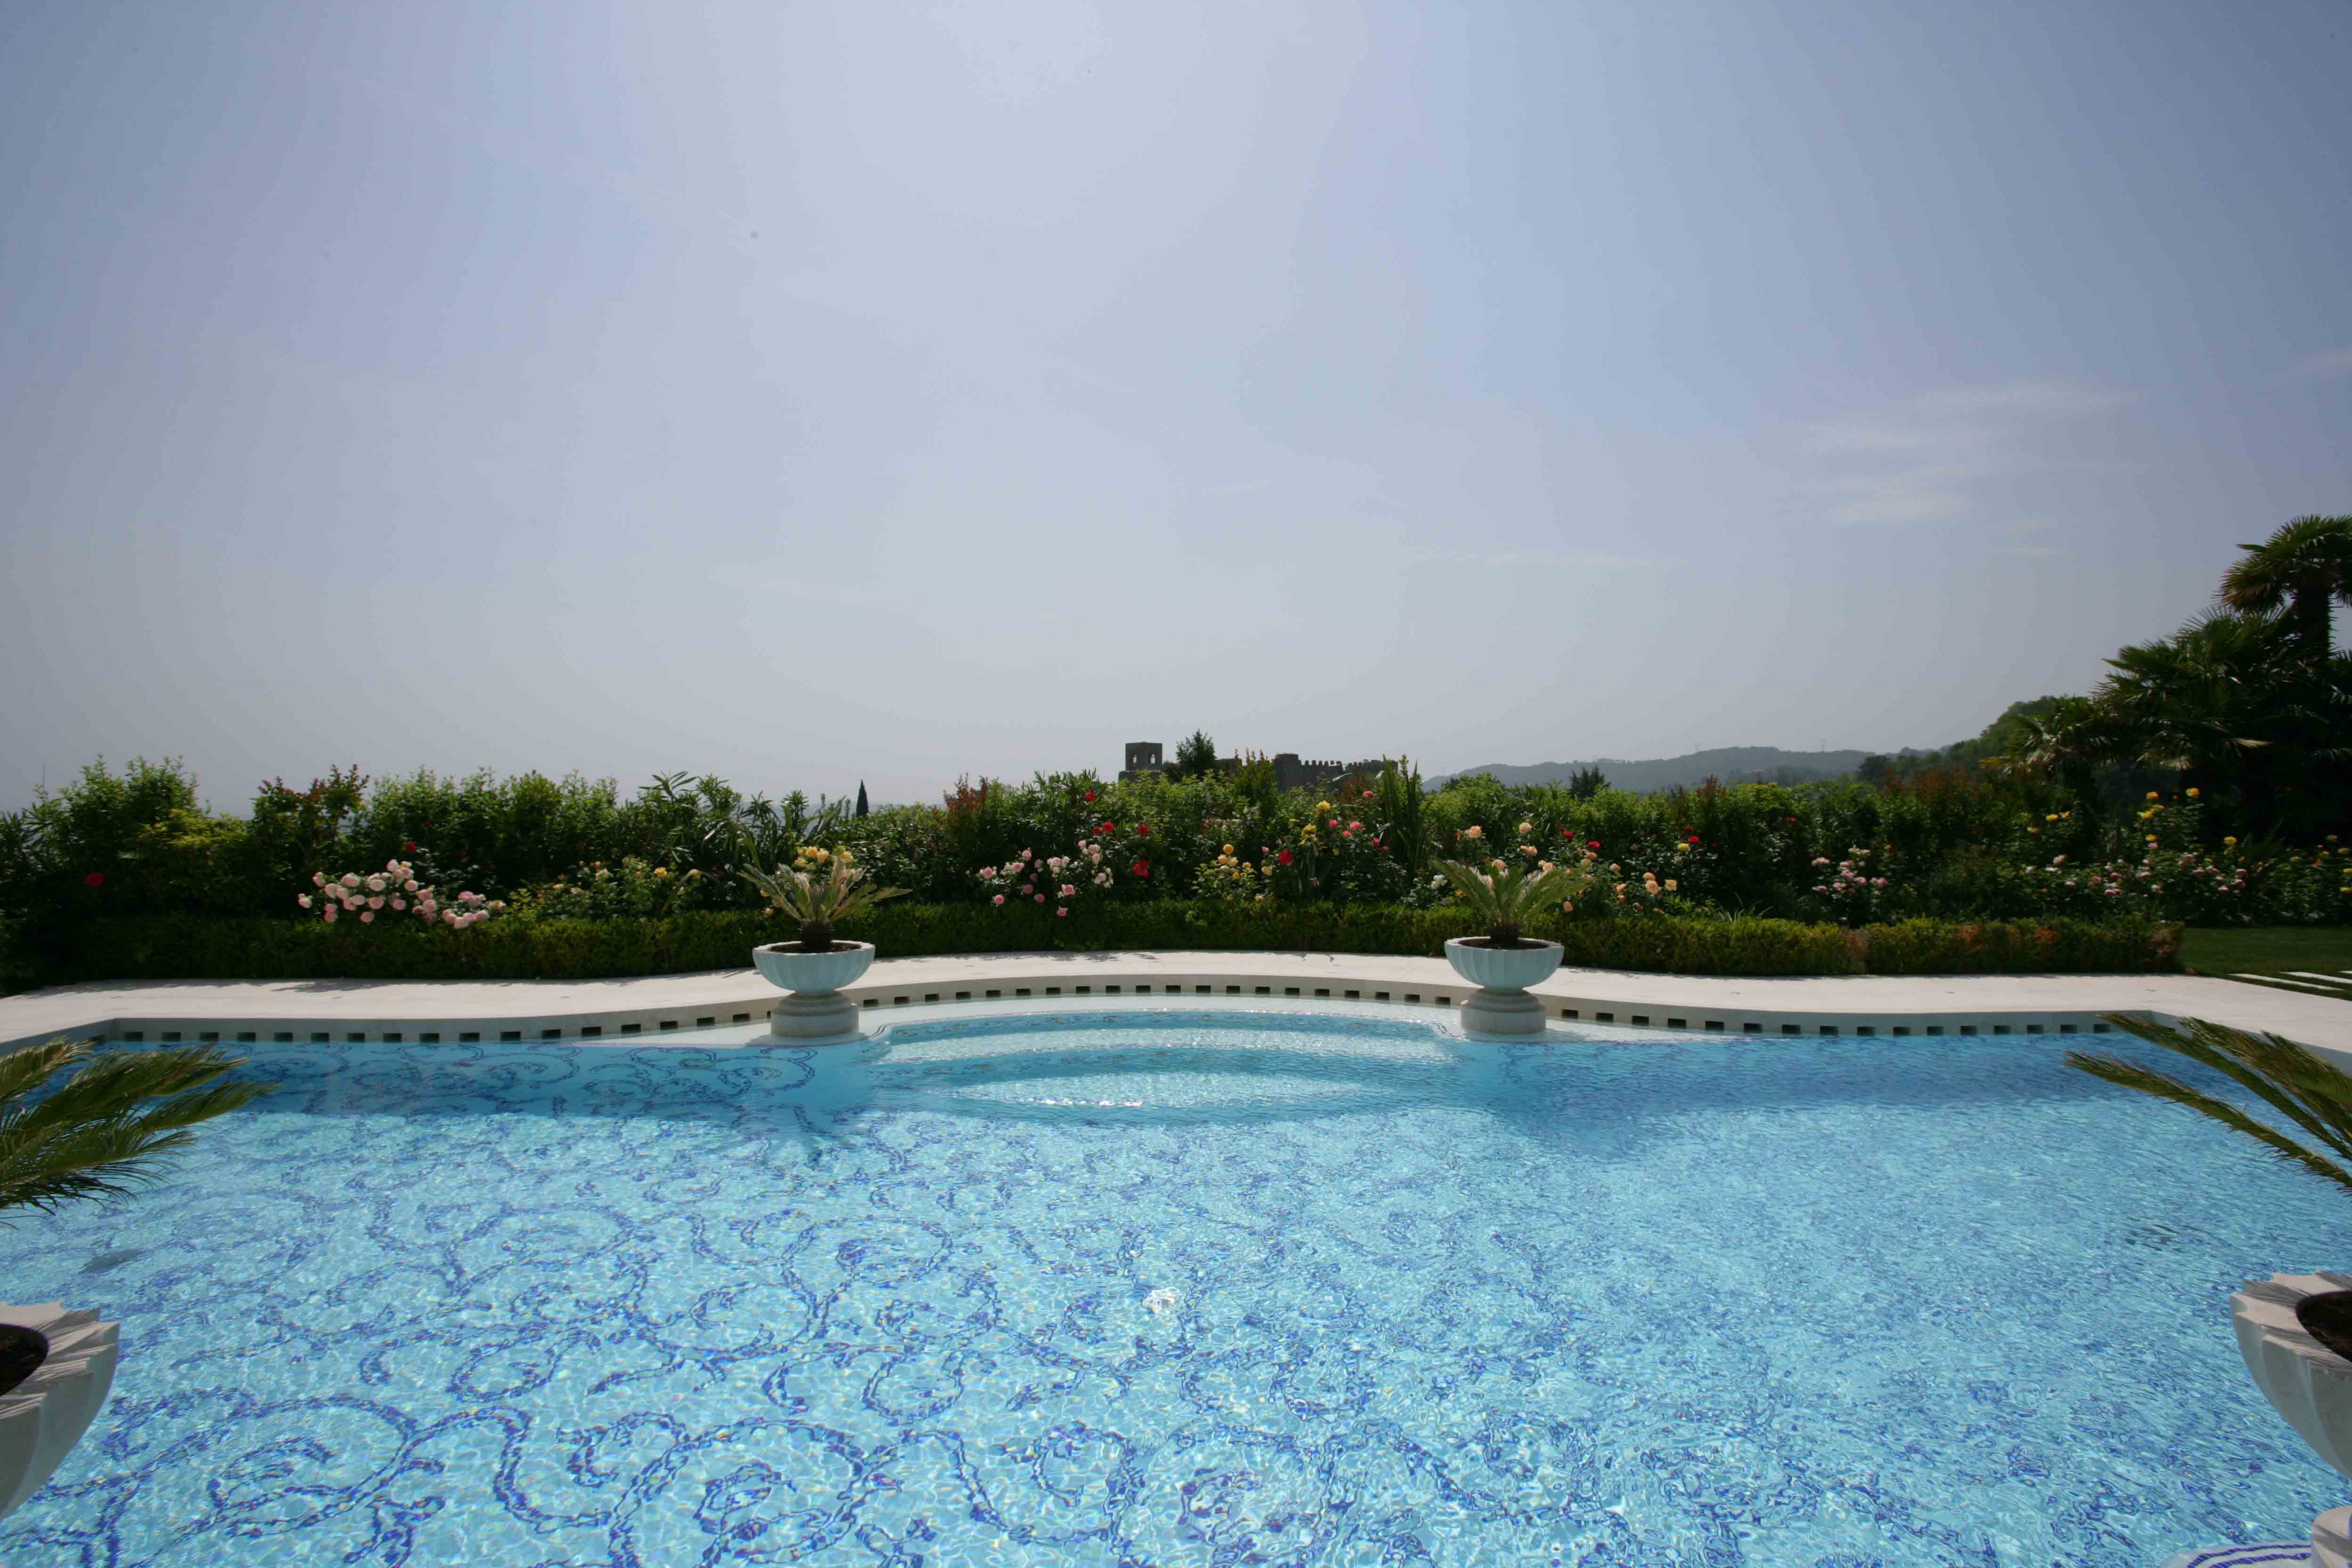 Harmonic and elegante lines draw this classic pool - استخر های شنا